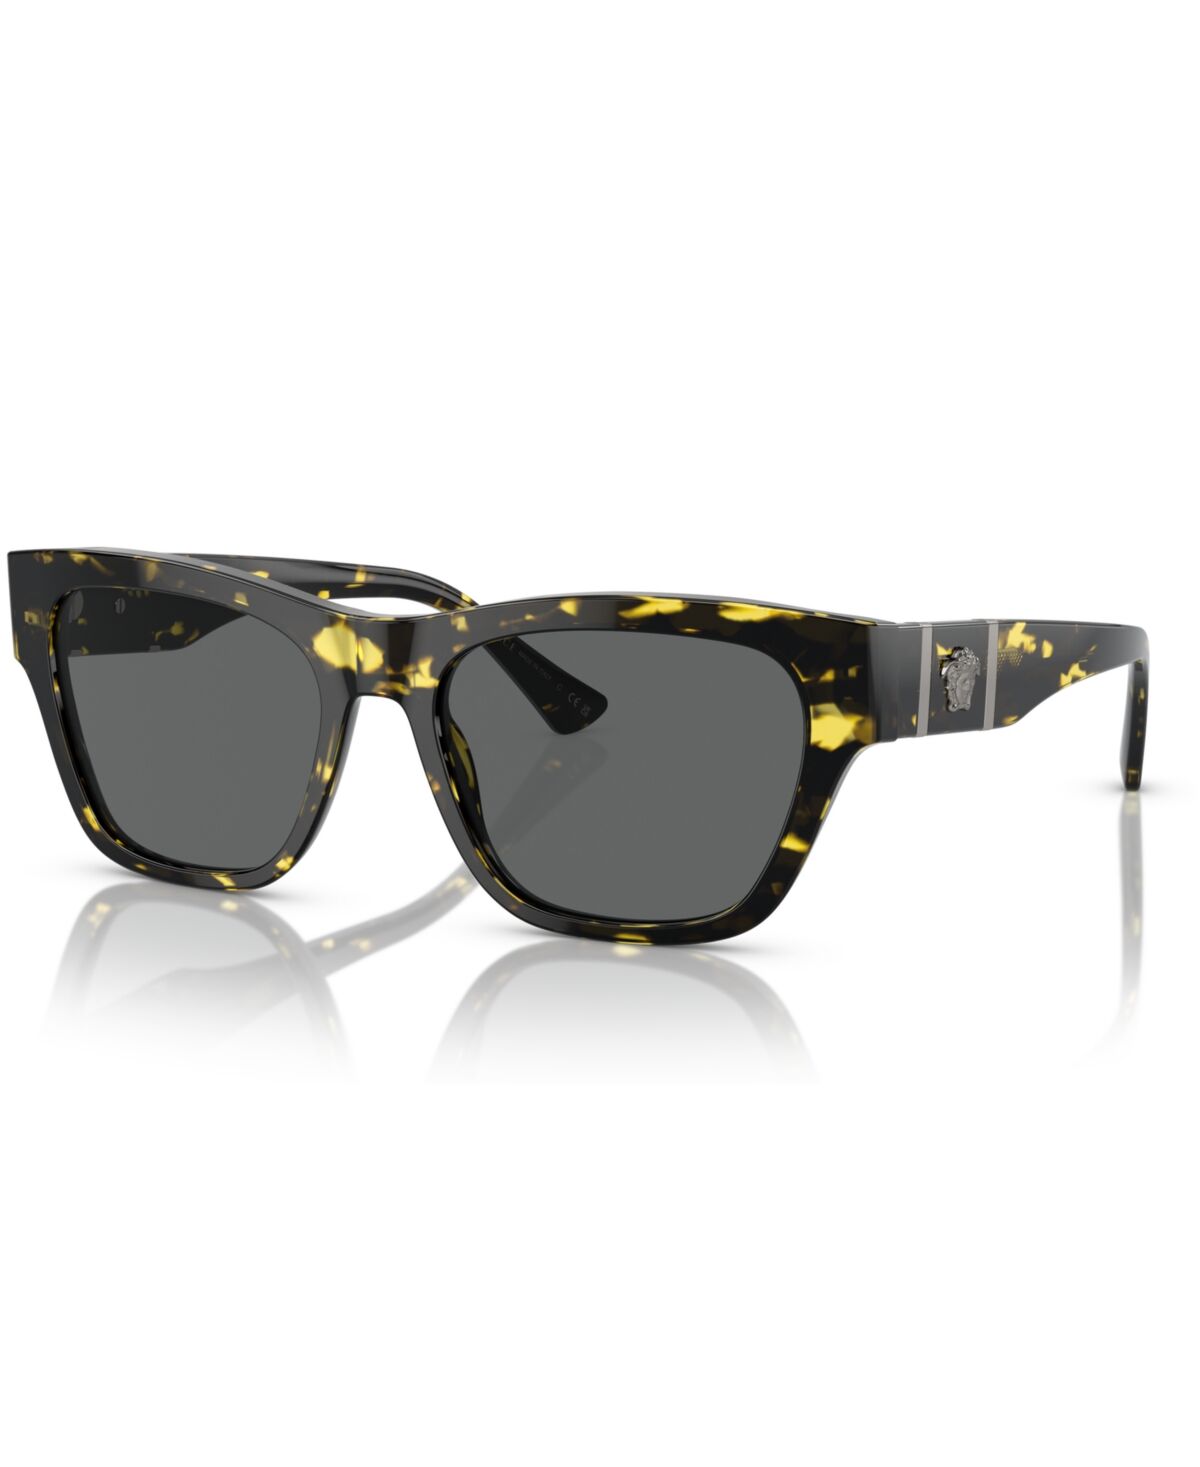 Versace Men's Sunglasses VE4457 - Havana